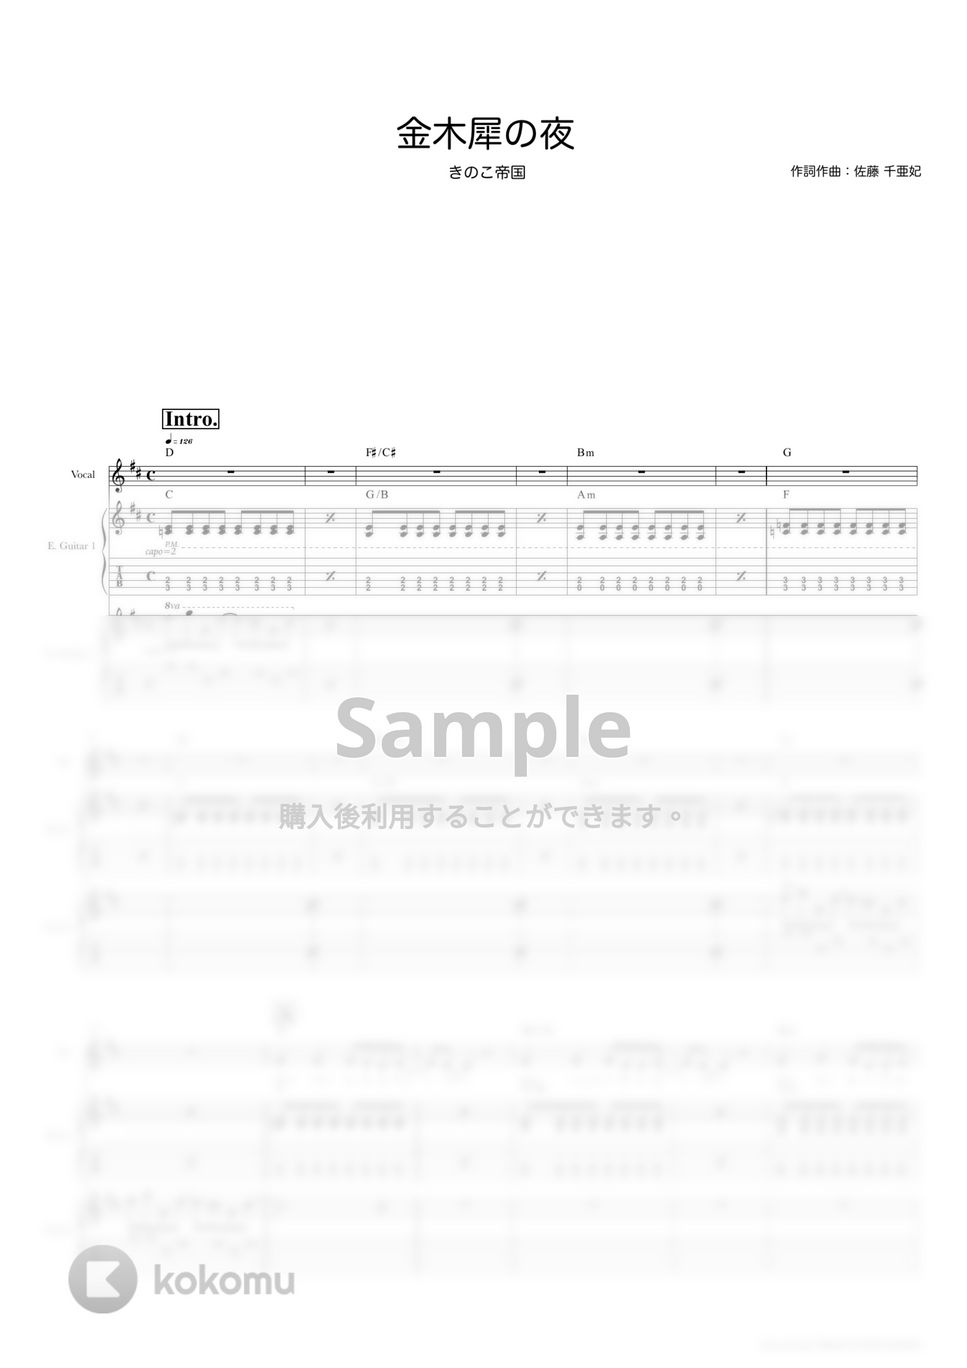 きのこ帝国 - 金木犀の夜 (ギタースコア・歌詞・コード付き) by TRIAD GUITAR SCHOOL